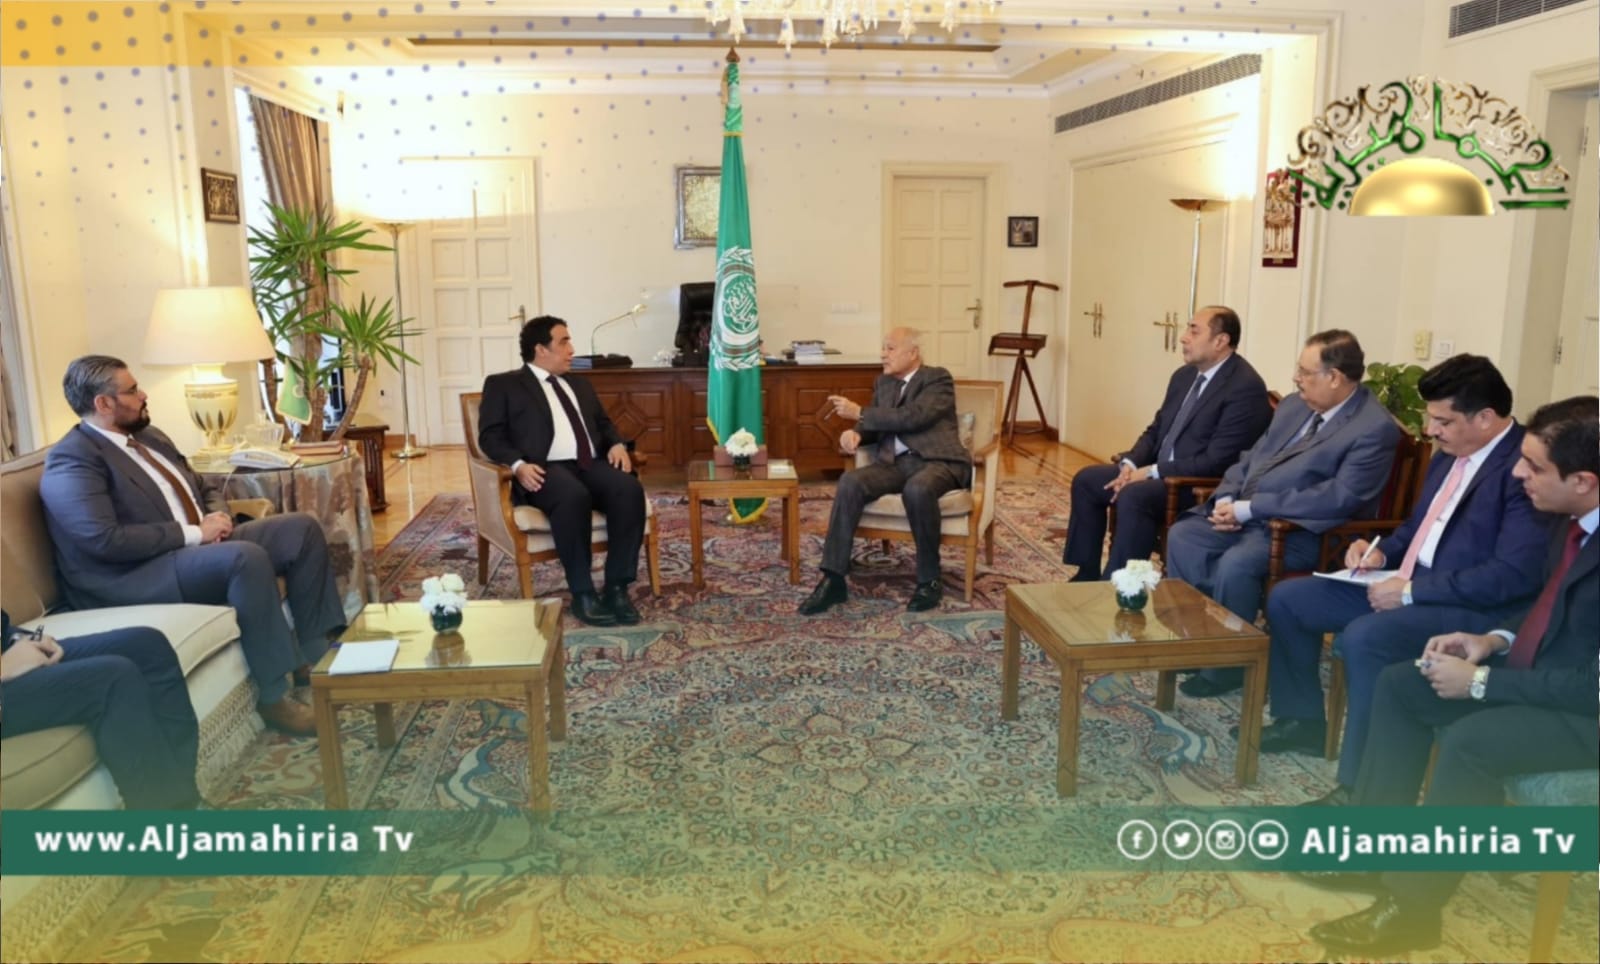 المنفي يستعرض رؤية المجلس الرئاسي لحل الأزمة الليبية أمام ممثلين وسفراء الدول العربية